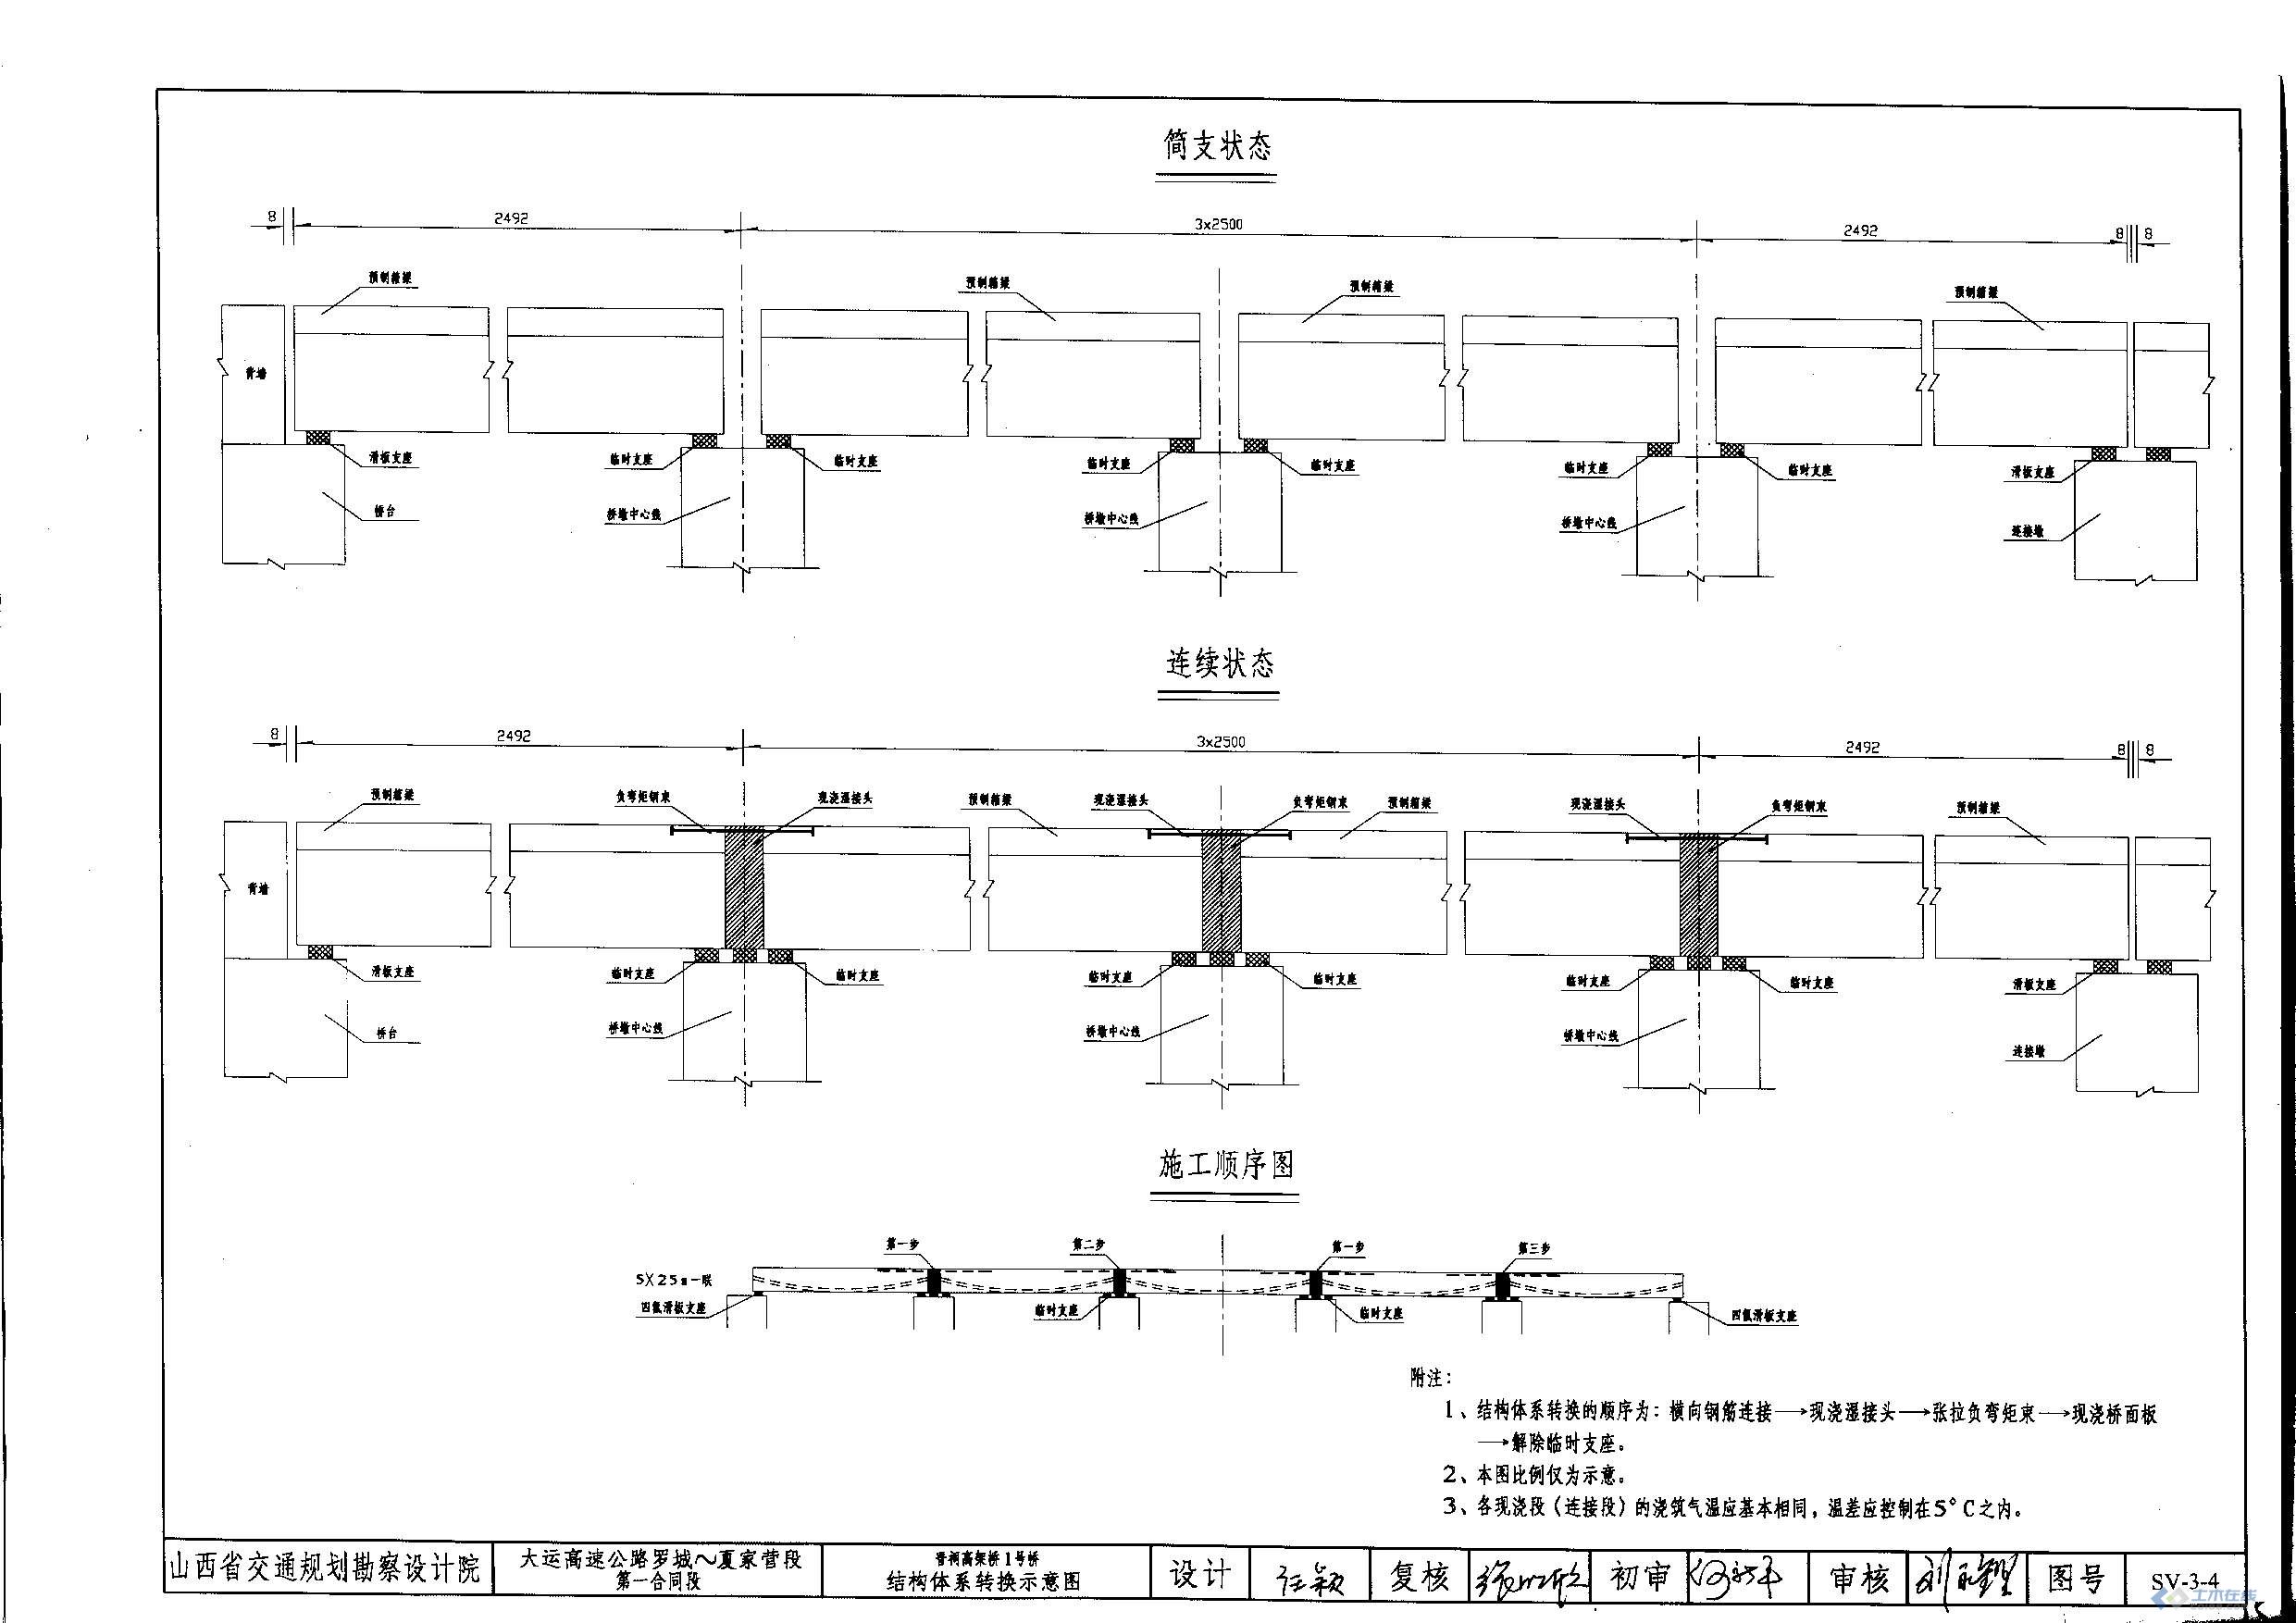 晋祠高架桥1号桥结构体系转换示意图（D5T4-1.1-4.1.15）.JPG